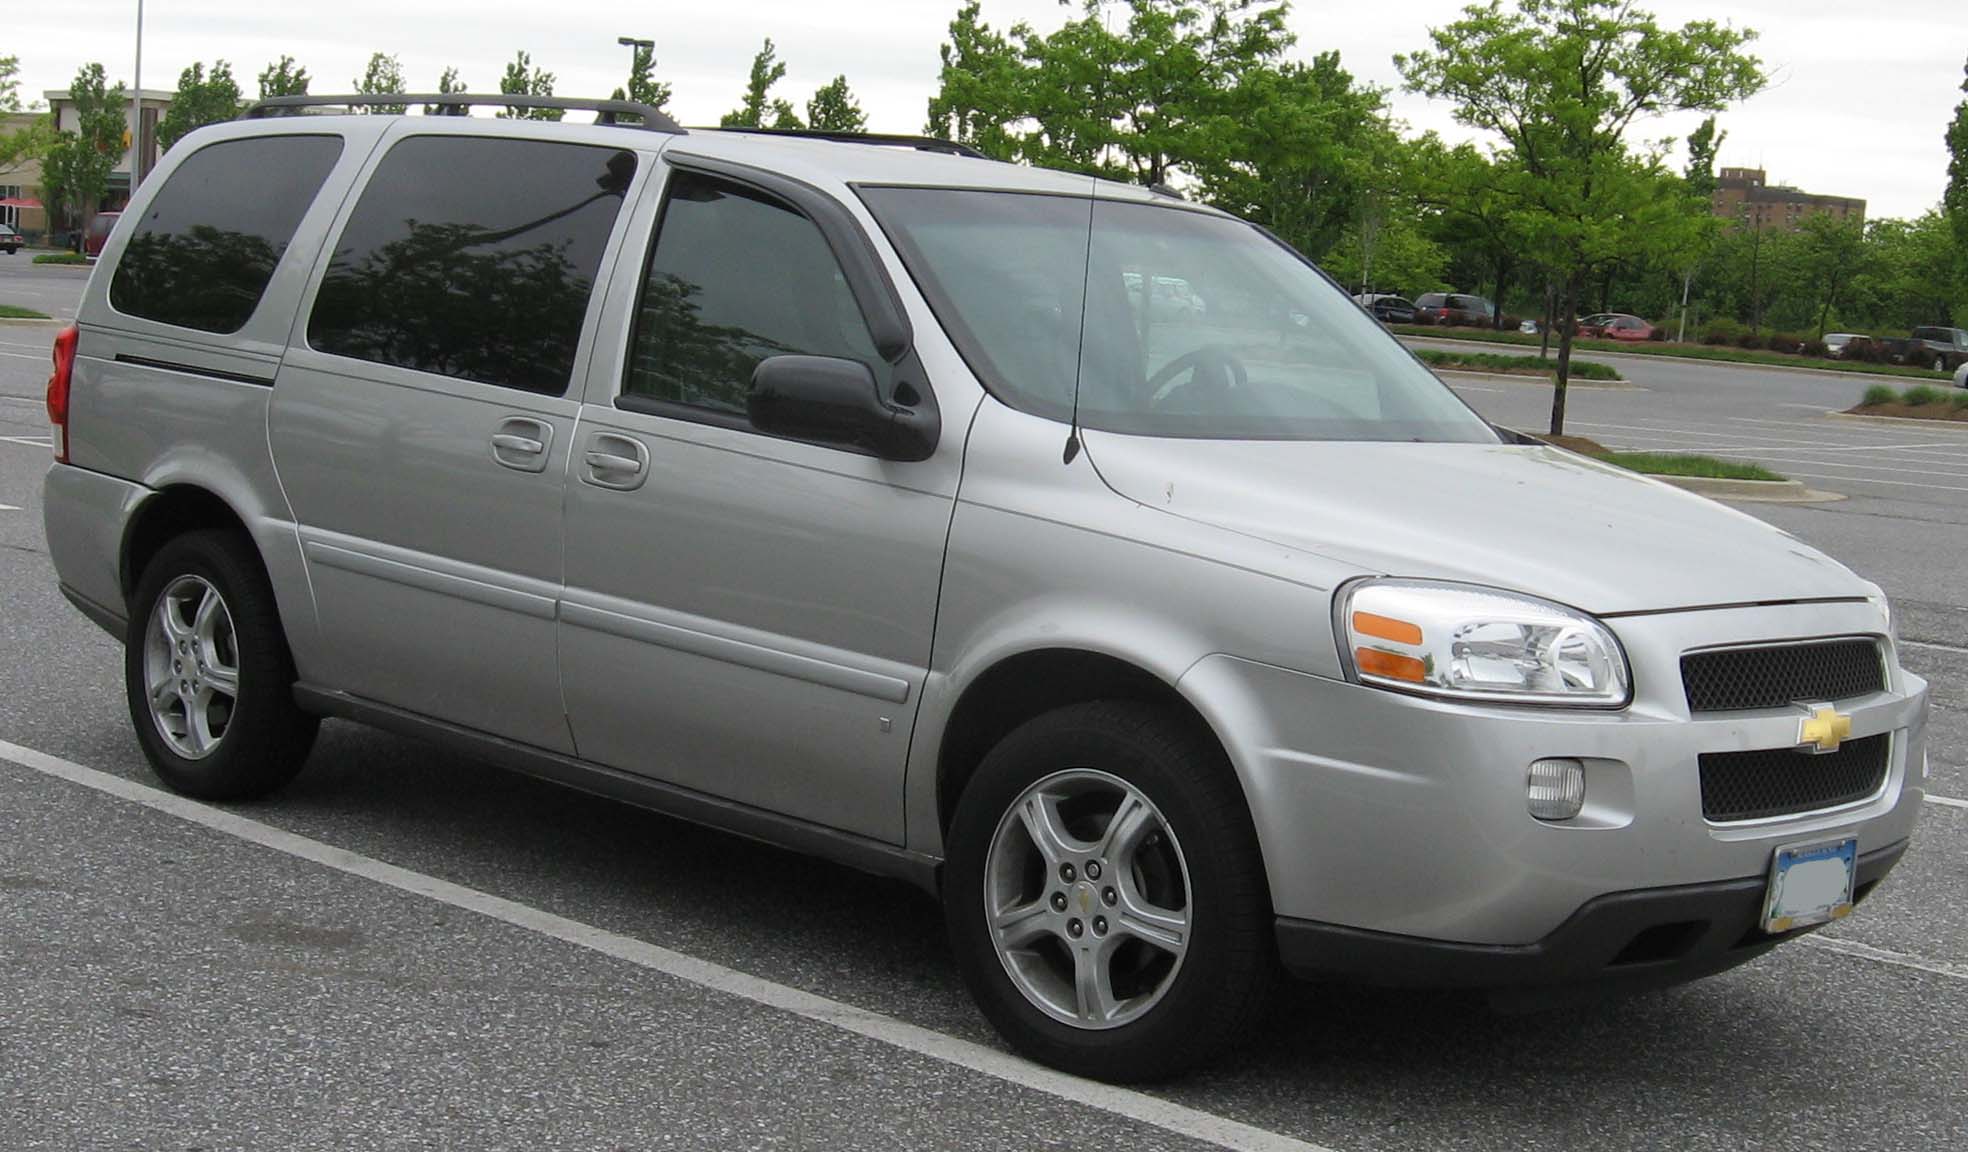 File:2005-07 Chevrolet Uplander.jpg - Wikimedia Commons